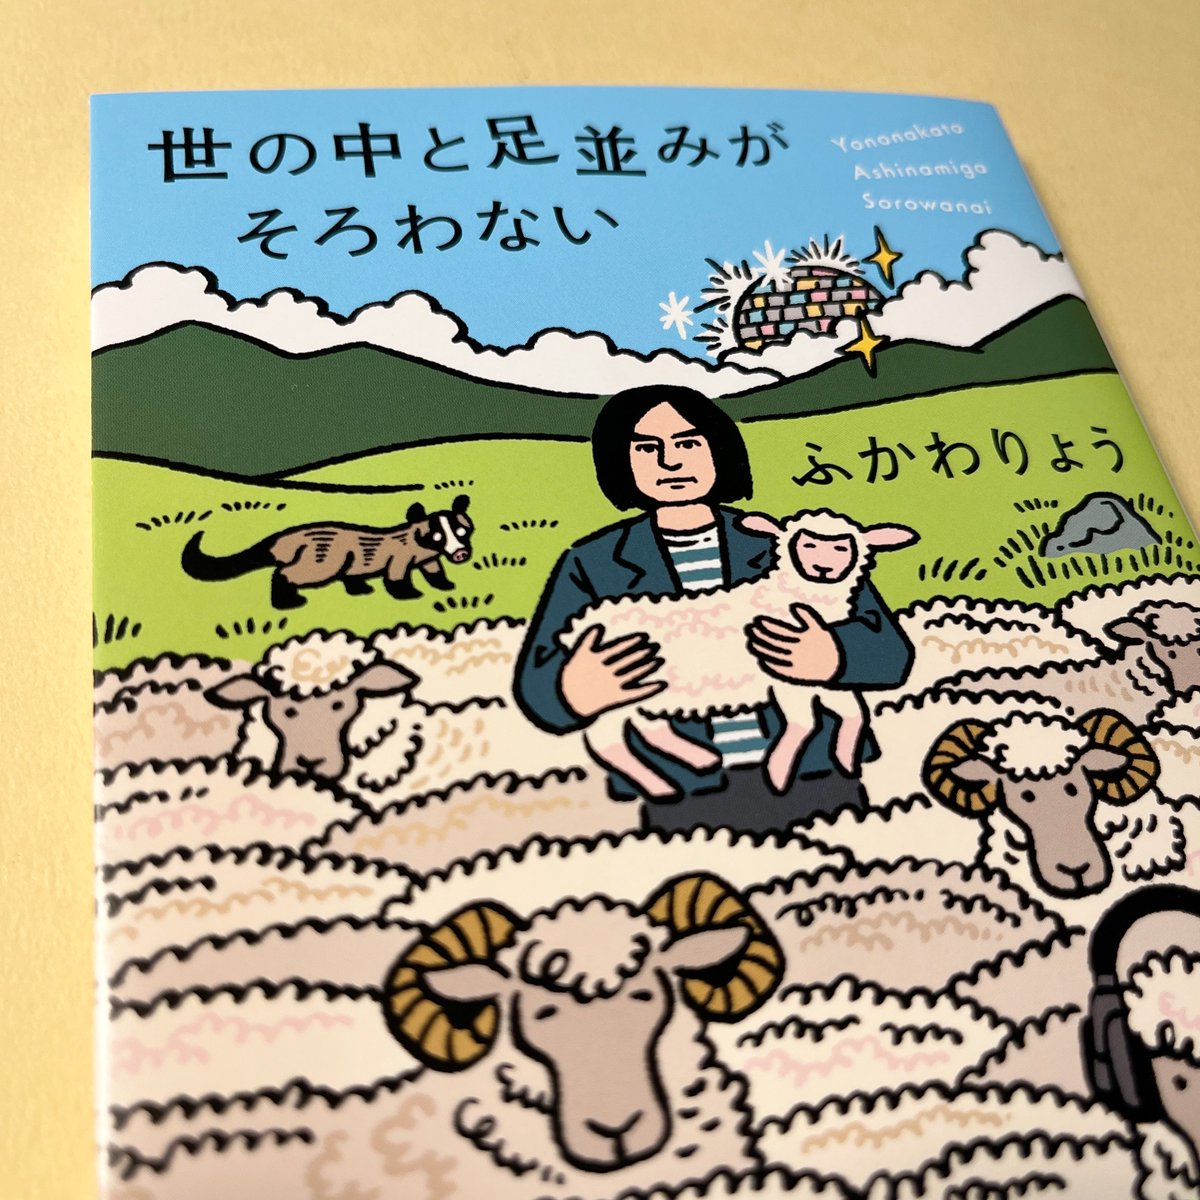 ふかわりょうさんのエッセイ集「世の中と足並みがそろわない」(新潮文庫)の装画を担当しました。アイスランドの羊たちの中に佇むふかわさんのイメージです。拝読し、改めてエッセイとは共感の文学だなあと思いました。